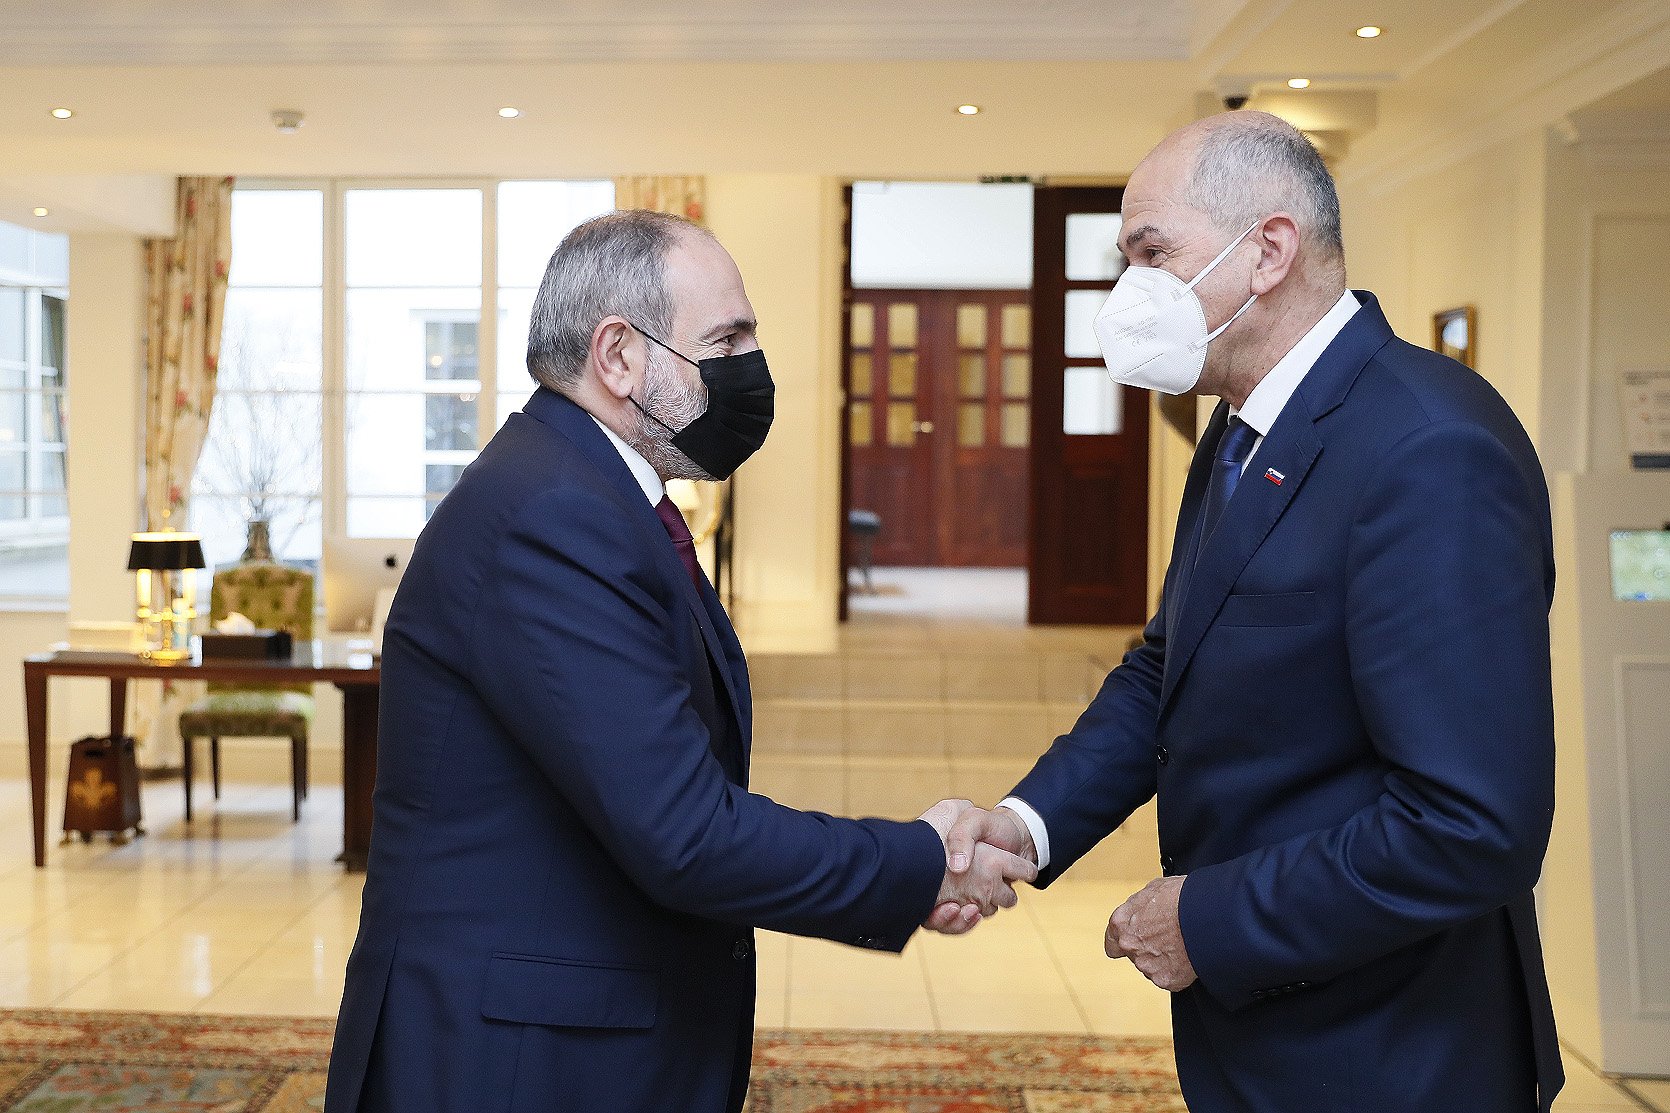 Հայաստանի և Սլովենիայի վարչապետները քննարկել են ՀՀ-ԵՄ հարաբերություններին, ինչպես նաև հայ-սլովենական համագործակցությանը վերաբերող հարցեր․ Տեսանյութ